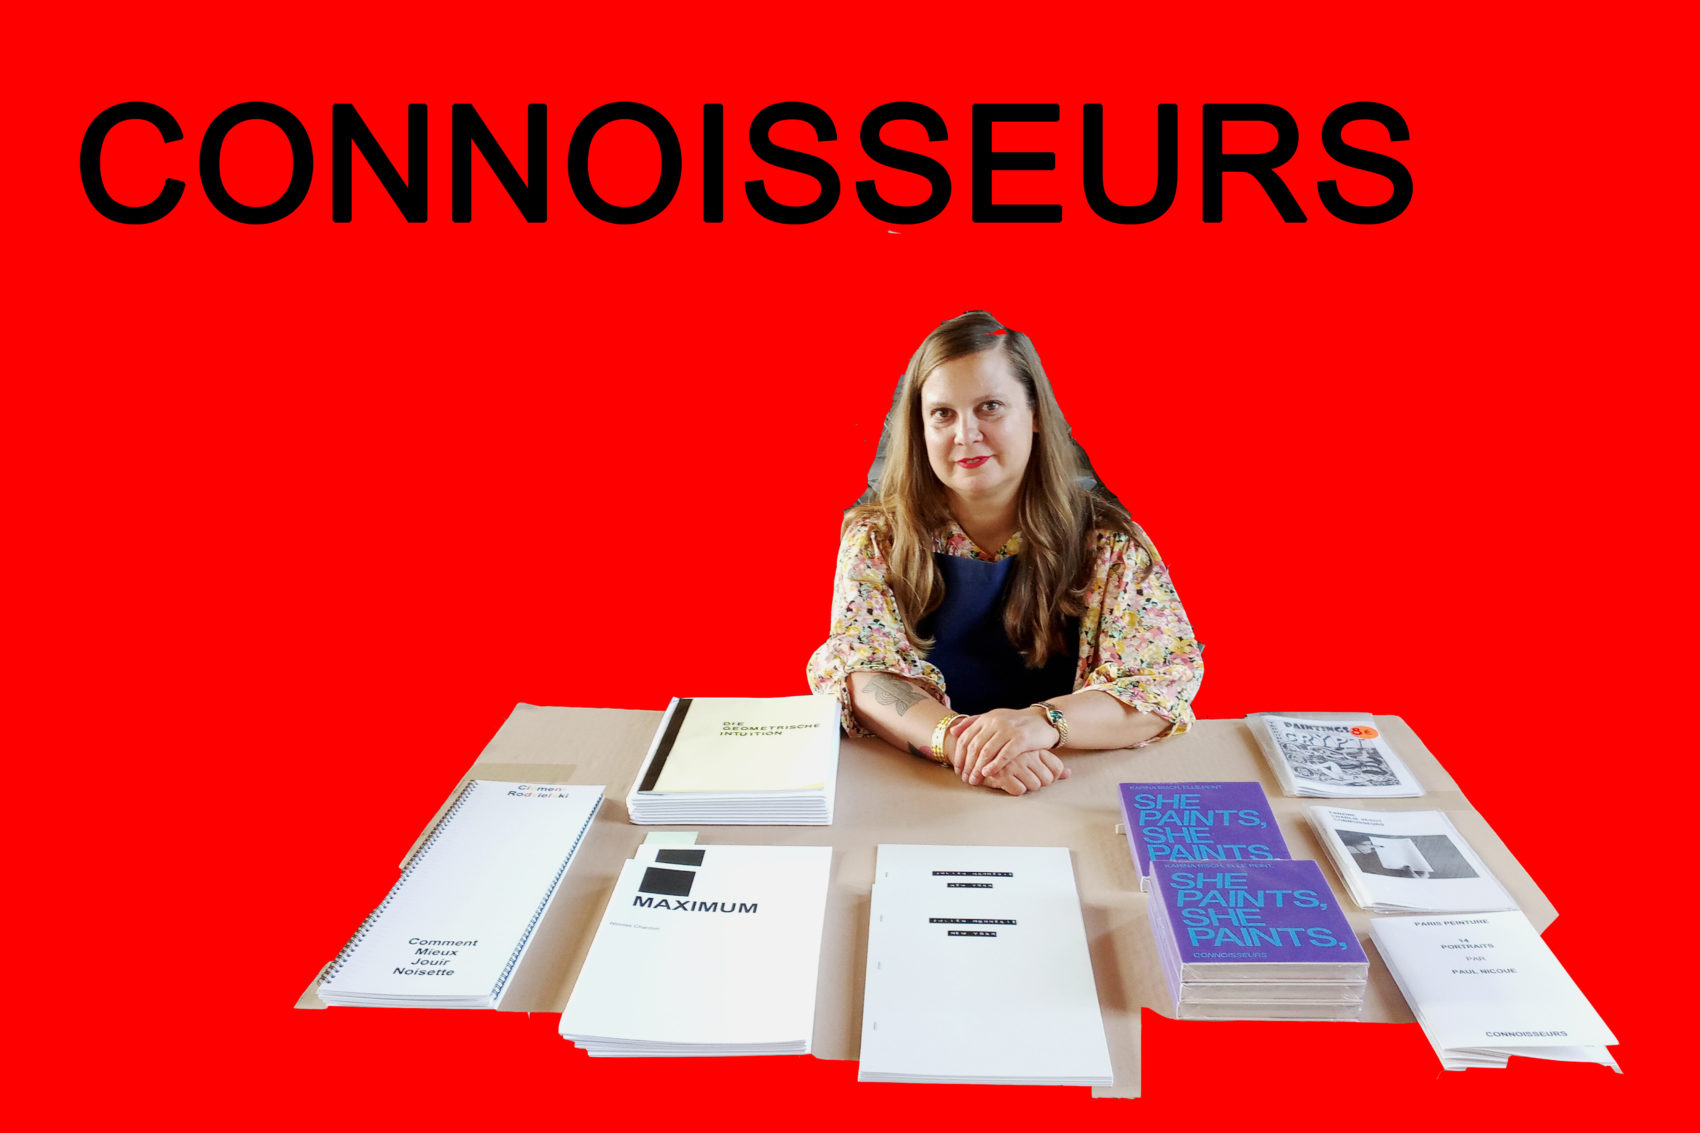 CONNOISSEURS - Paris Ass Book Fair